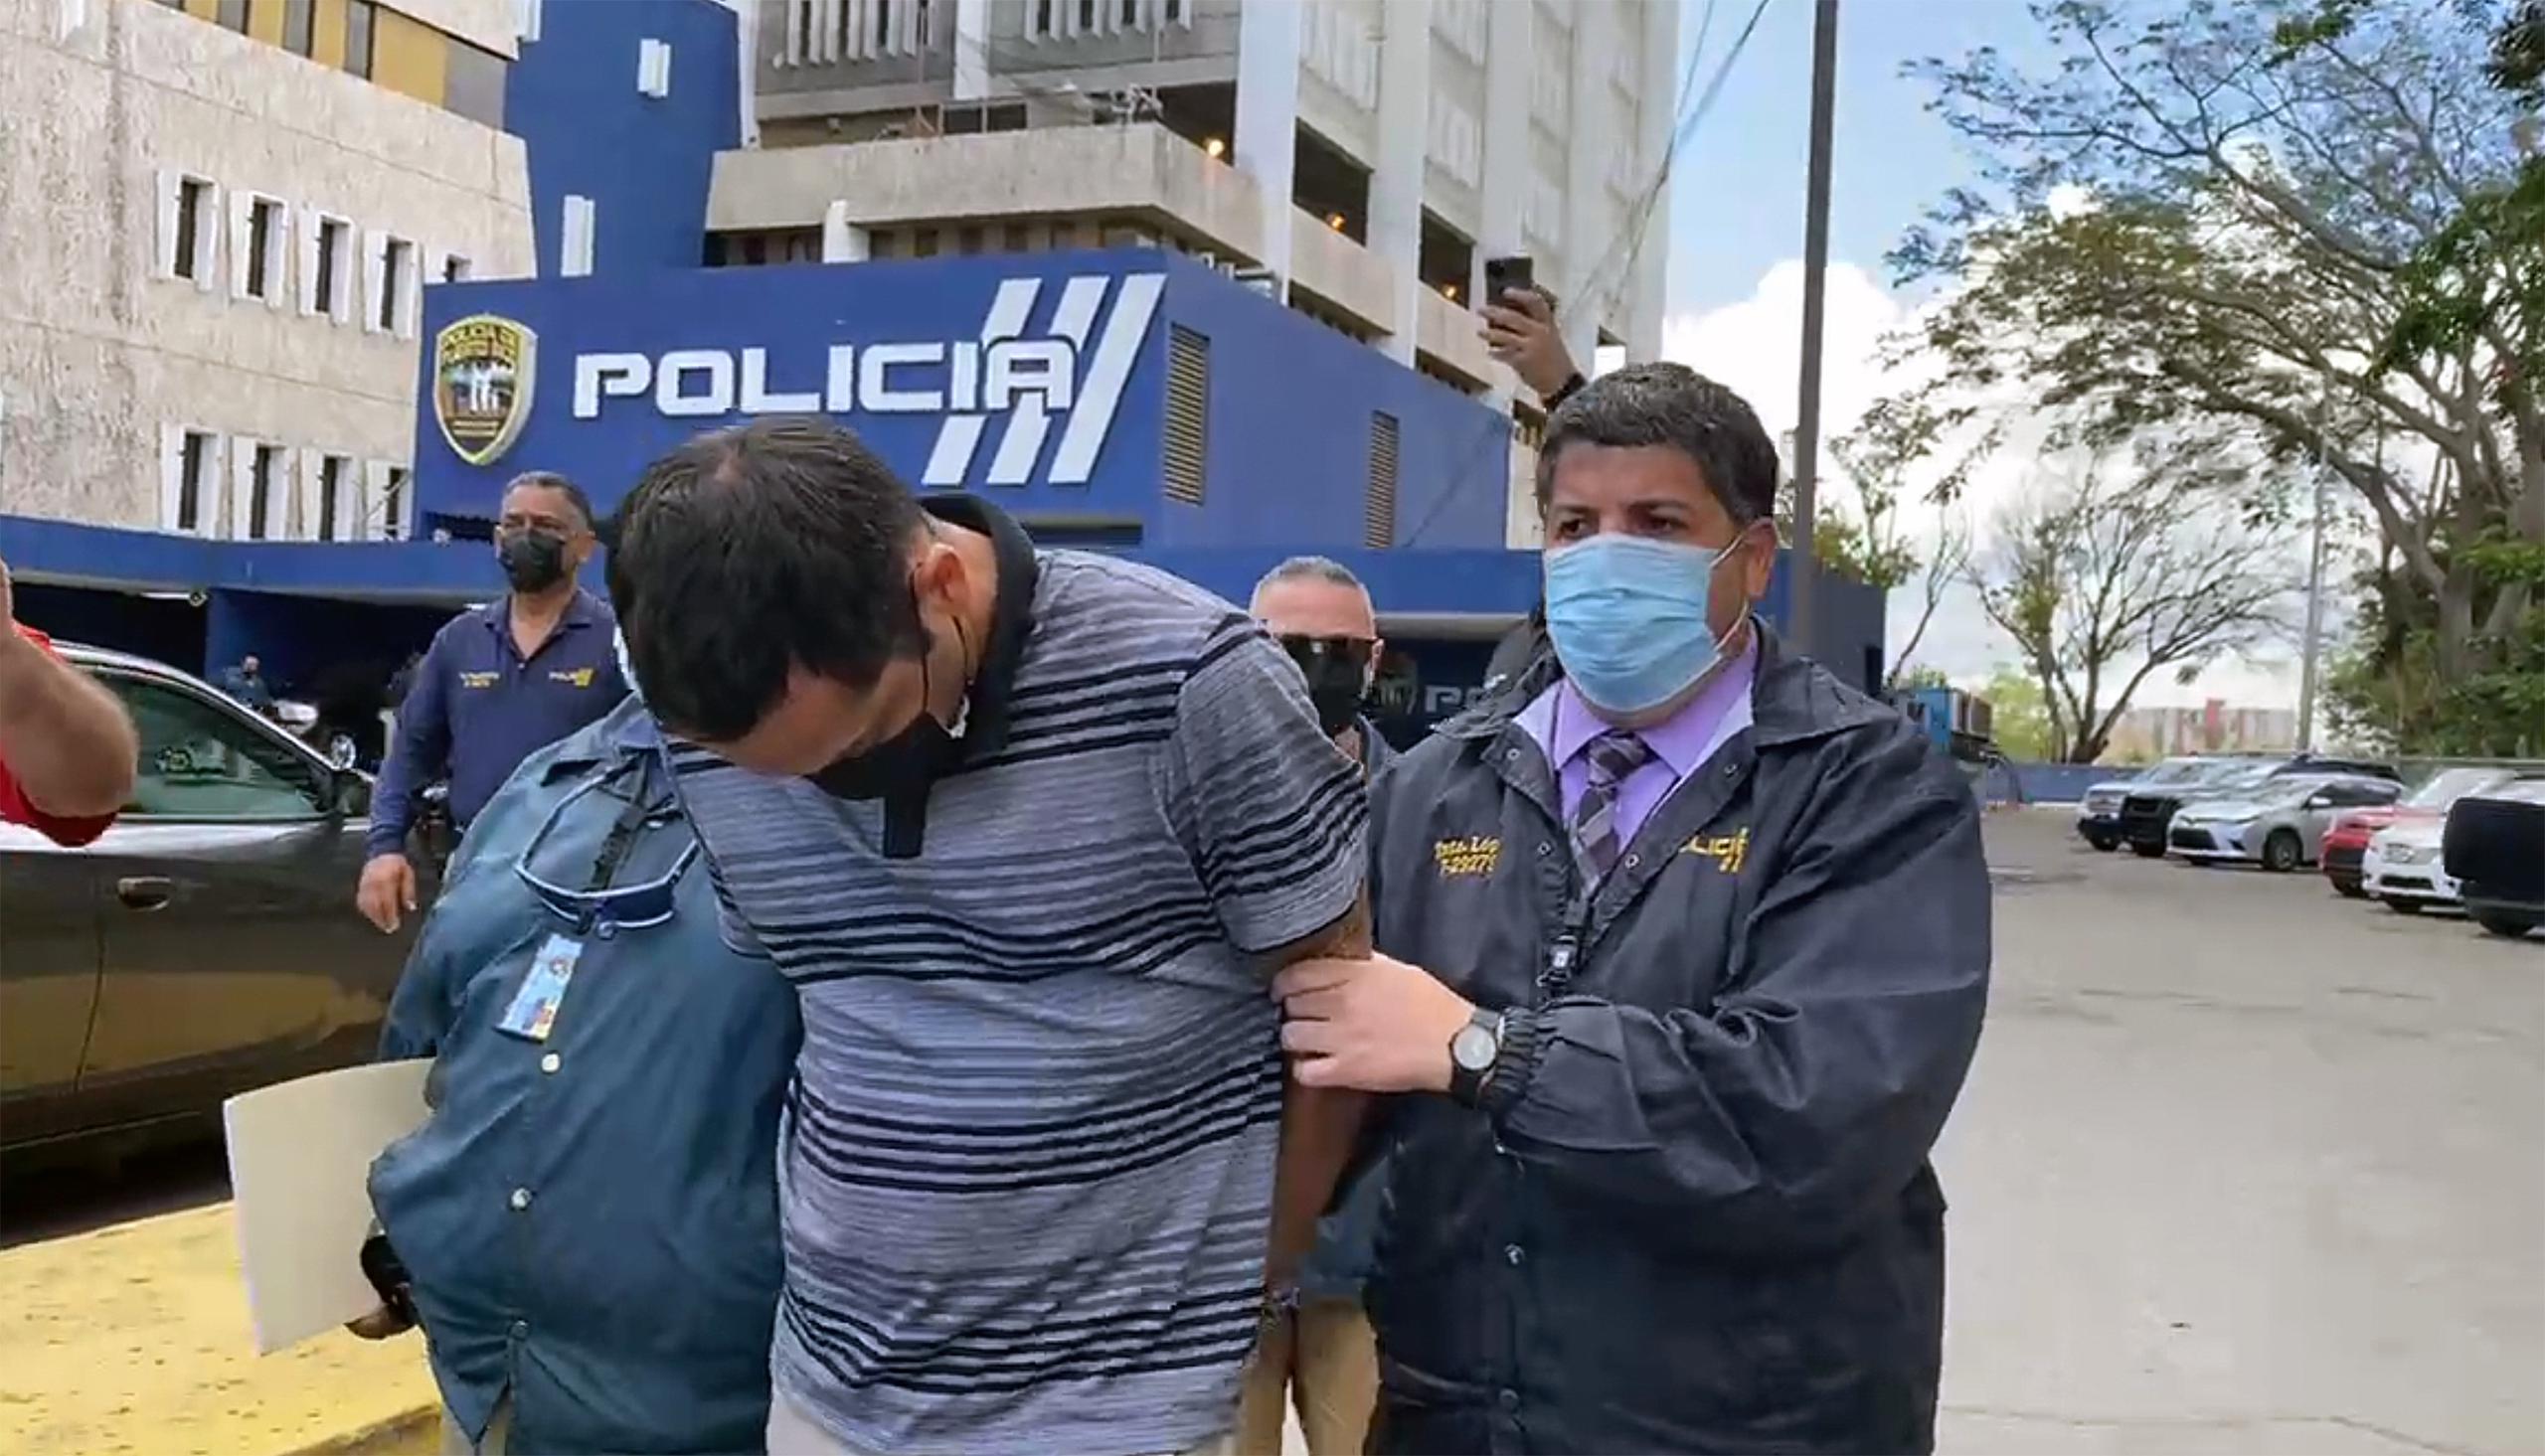 La Policía traslada a Miguel Ángel Ocasio Santiago tras ficharlo en el Cuartel General en Hato Rey, luego de la acusación por el asesinato de Andrea Ruiz Costas.